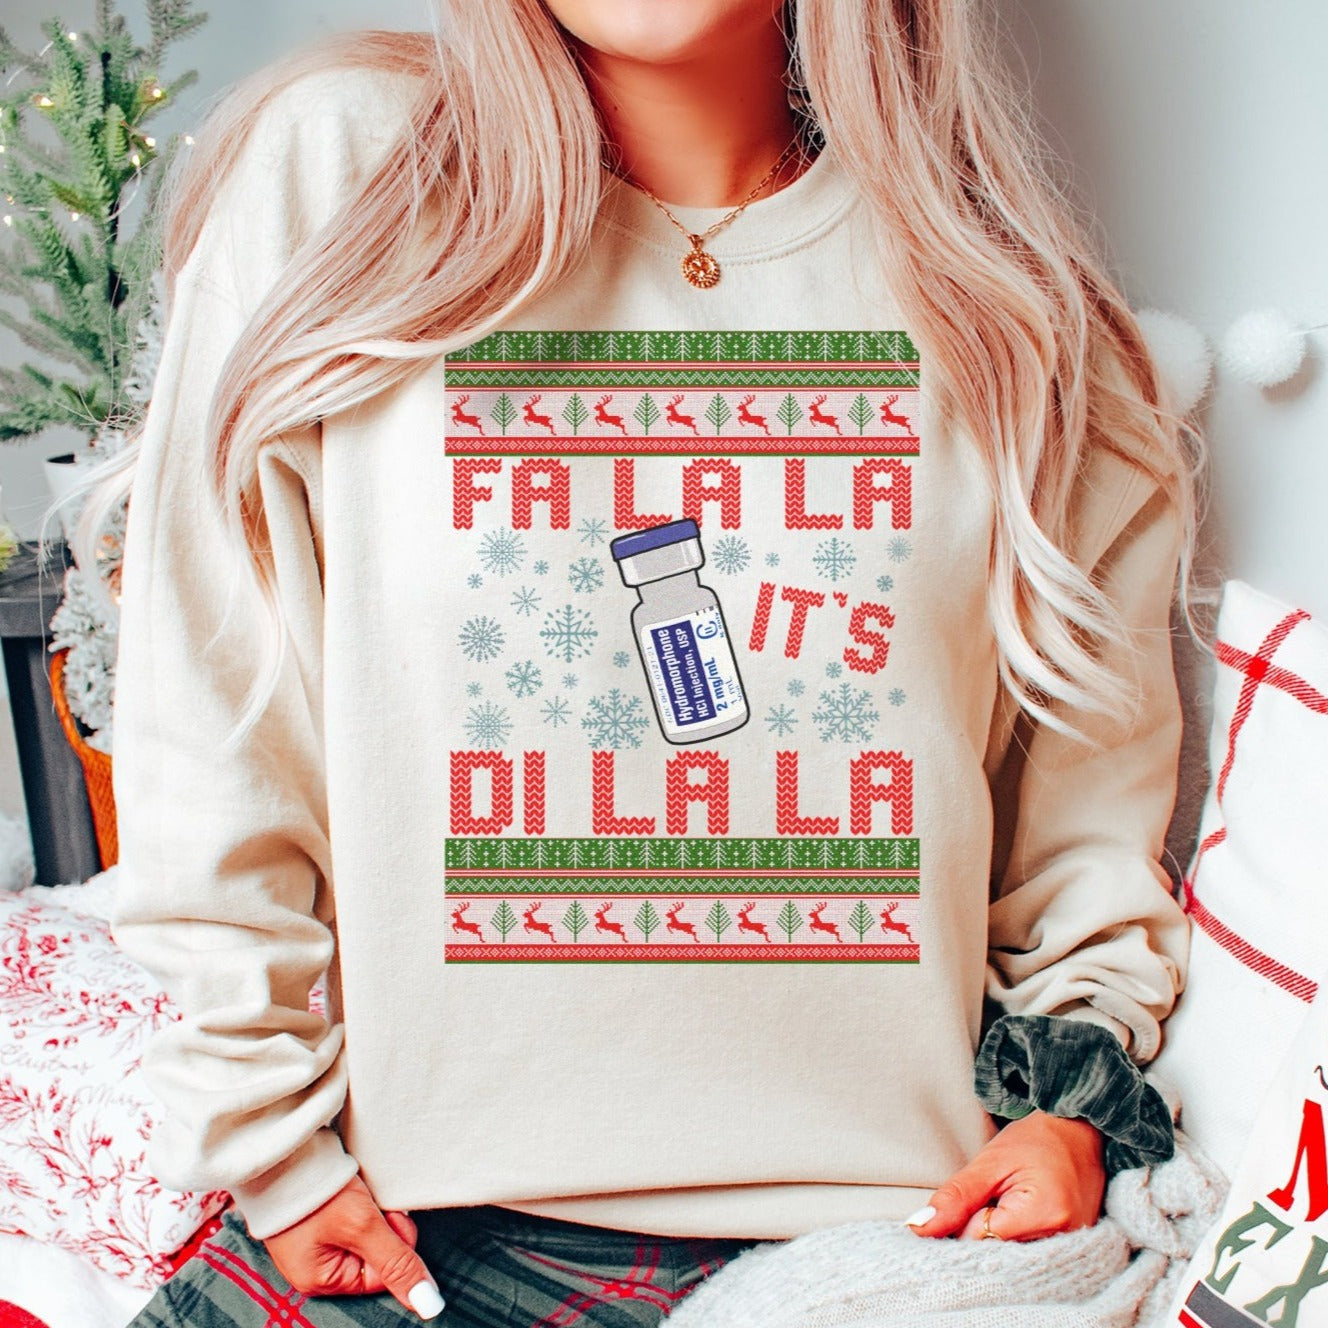 Fa-La-La It's Di-La-La Ugly Christmas Sweater